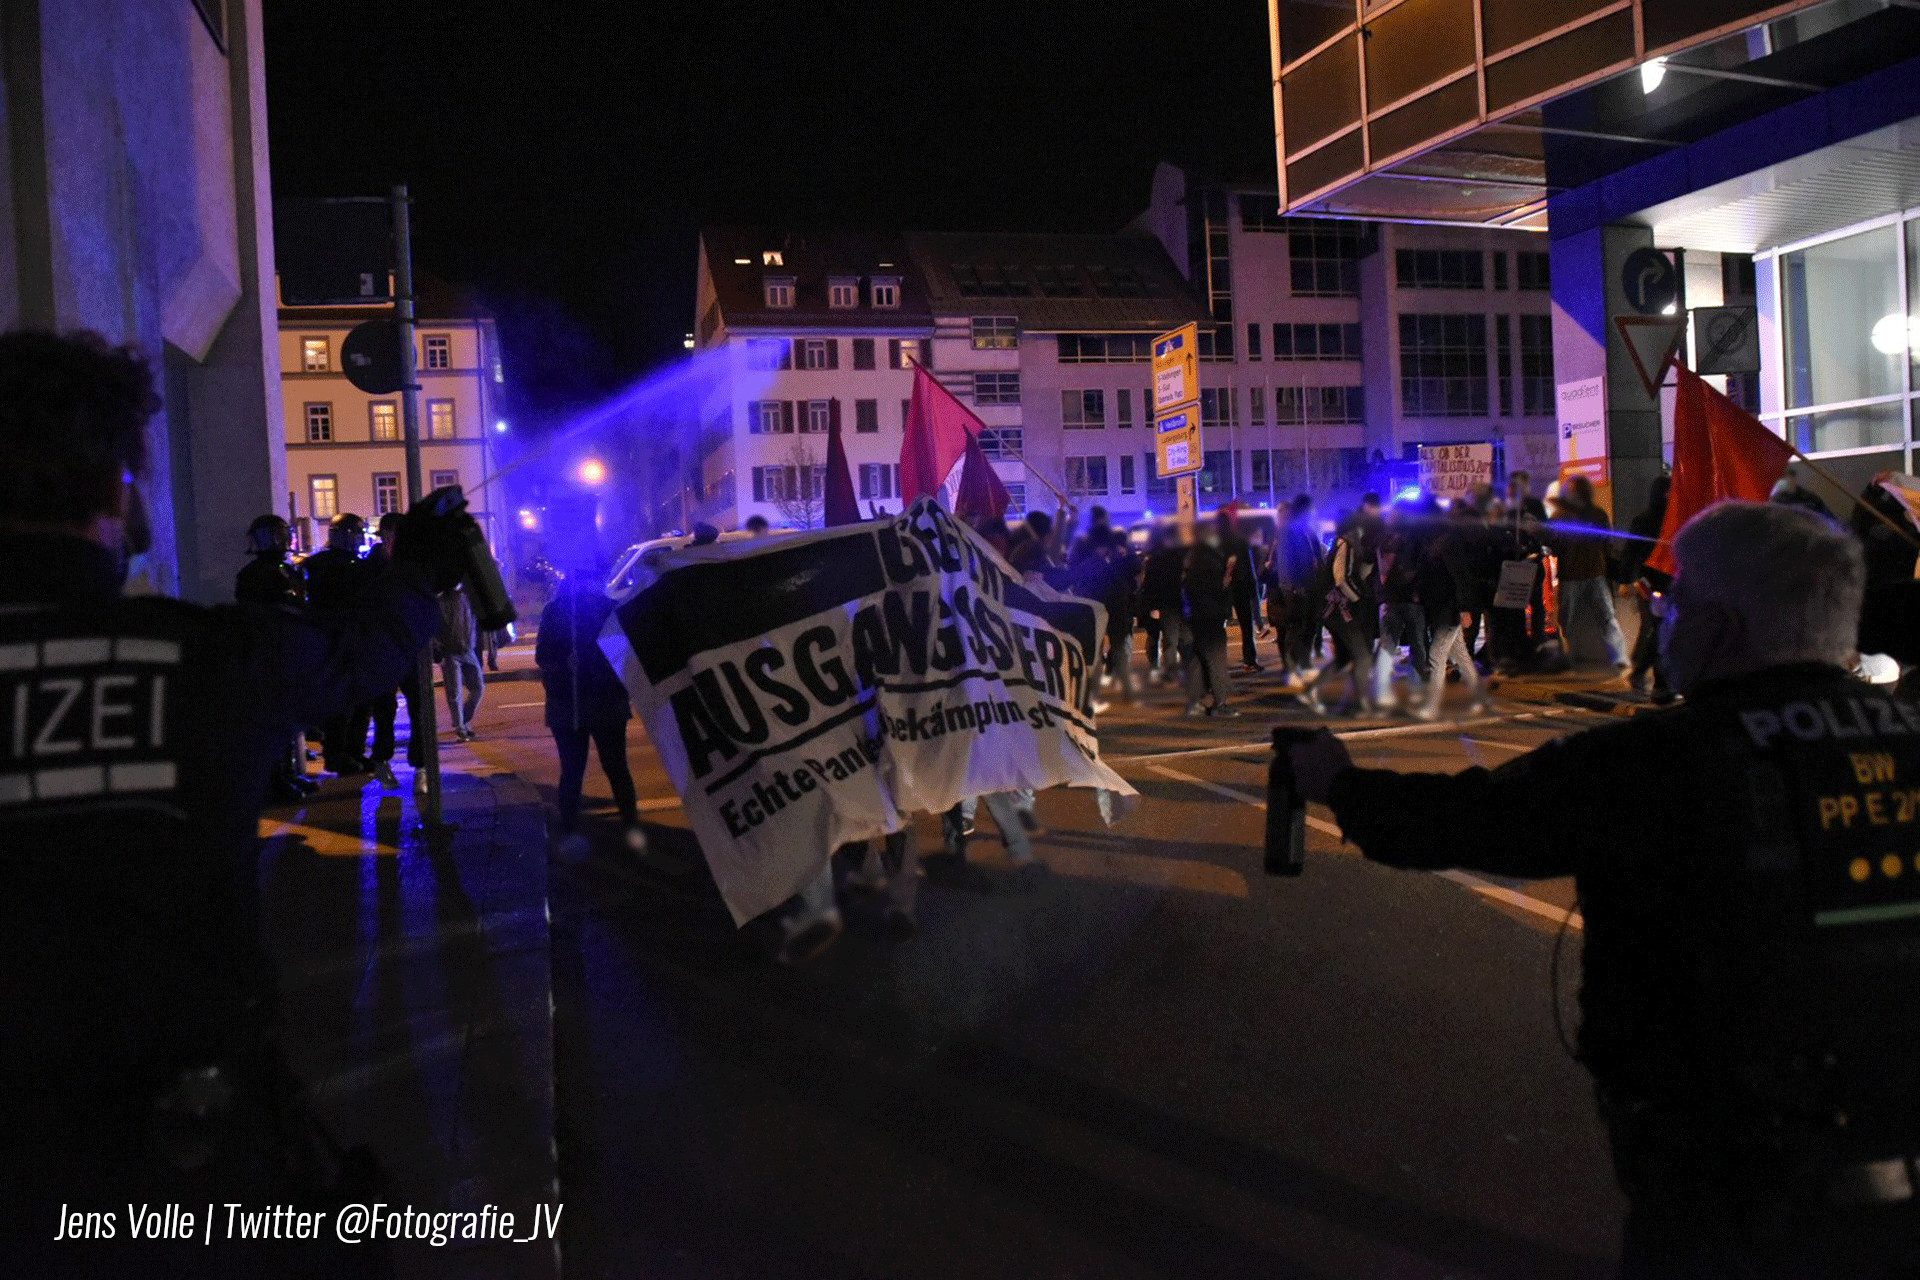 Polizeigewalt in Stuttgart: Demo gegen Ausgangssperren wird angegriffen. Zwei Wochen vorher hofierte Polizei Querdenken.